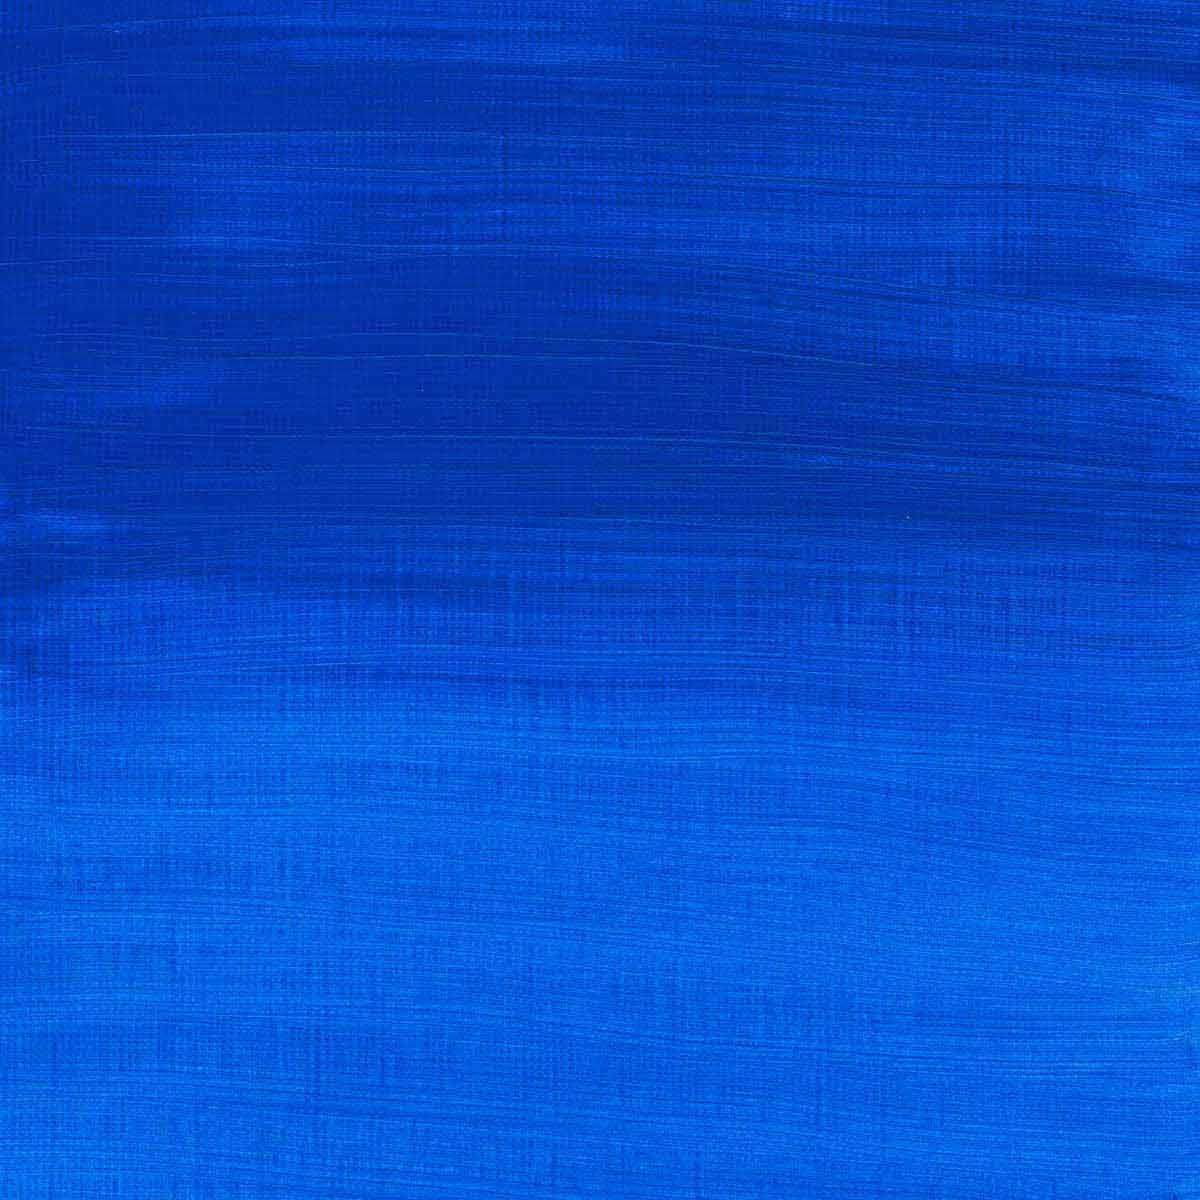 Winsor en Newton - Acryl -kleur van professionele artiesten - 200 ml - Cobalt Blue